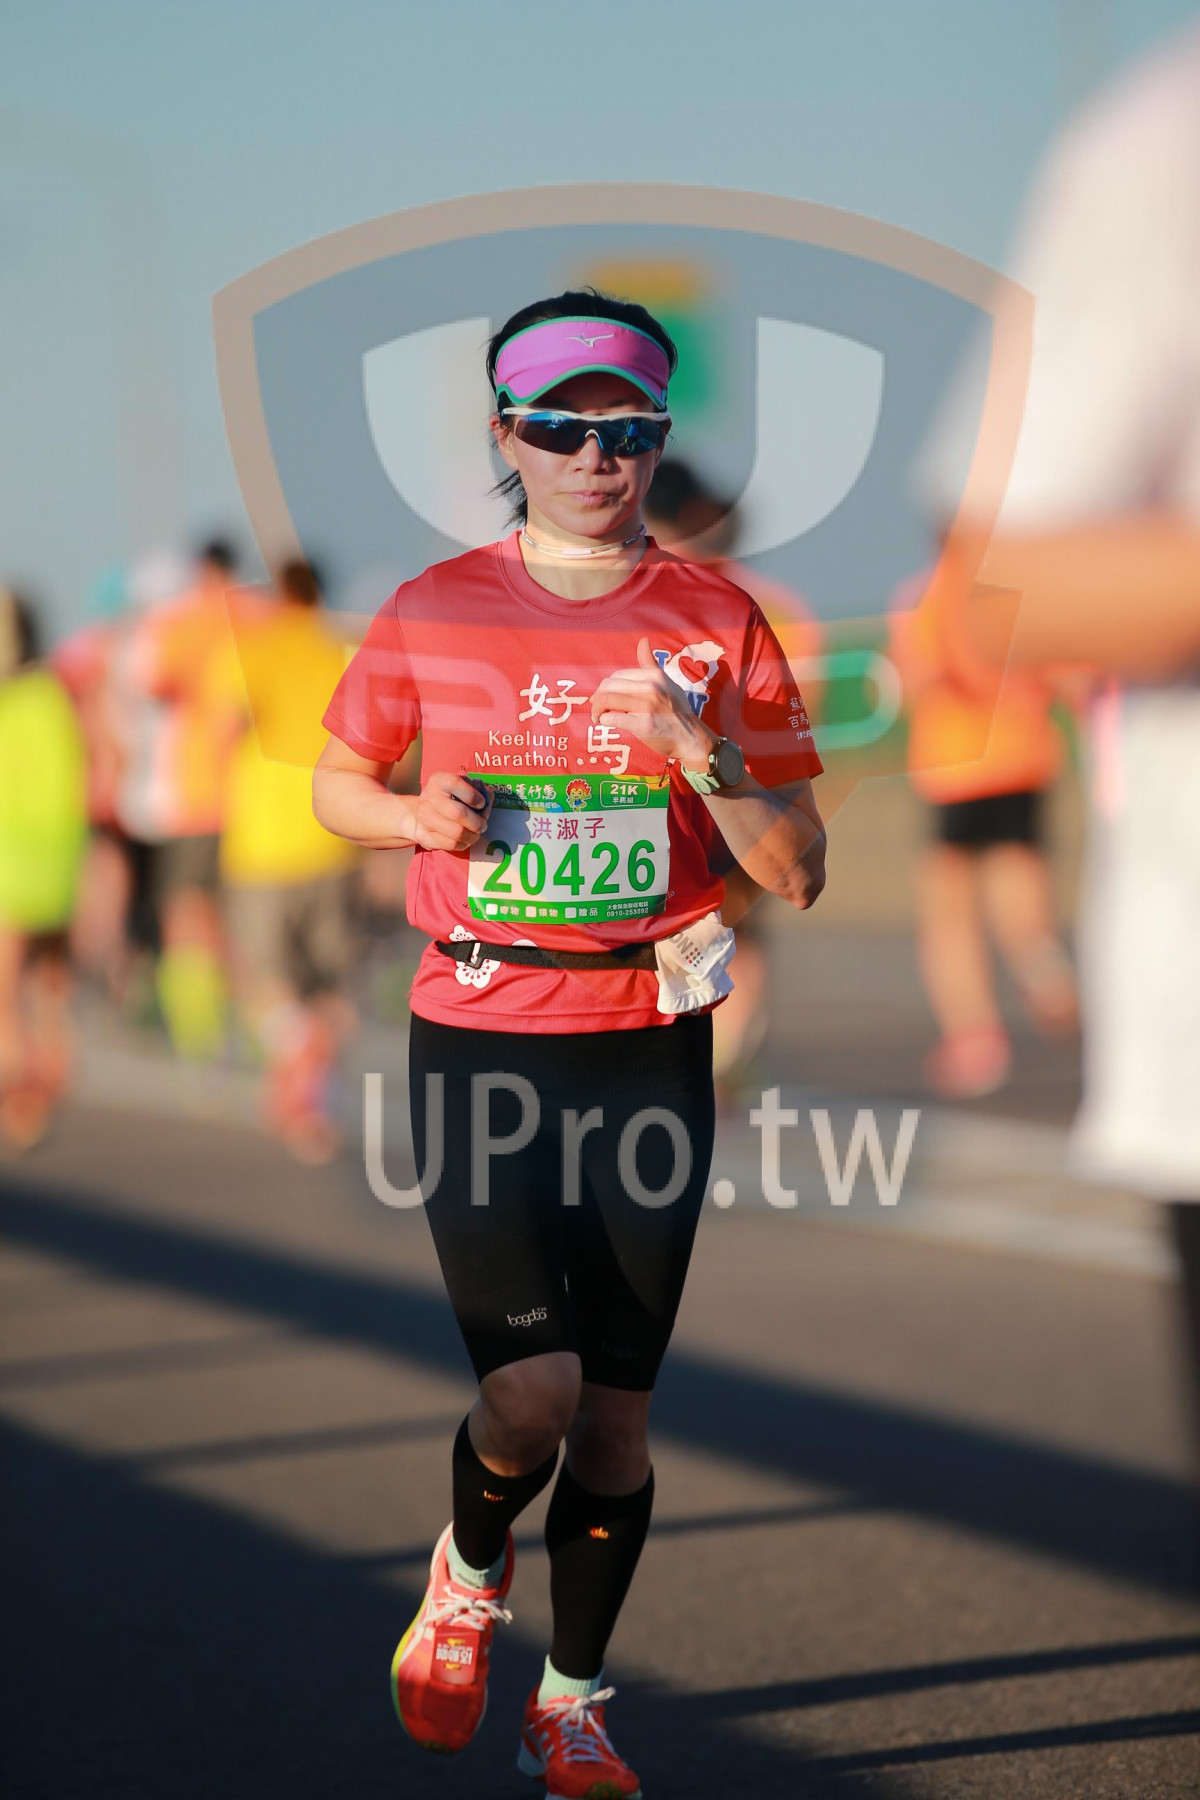 Keelung,Marathon,21K,,20426|06:40-06:59|jay lee